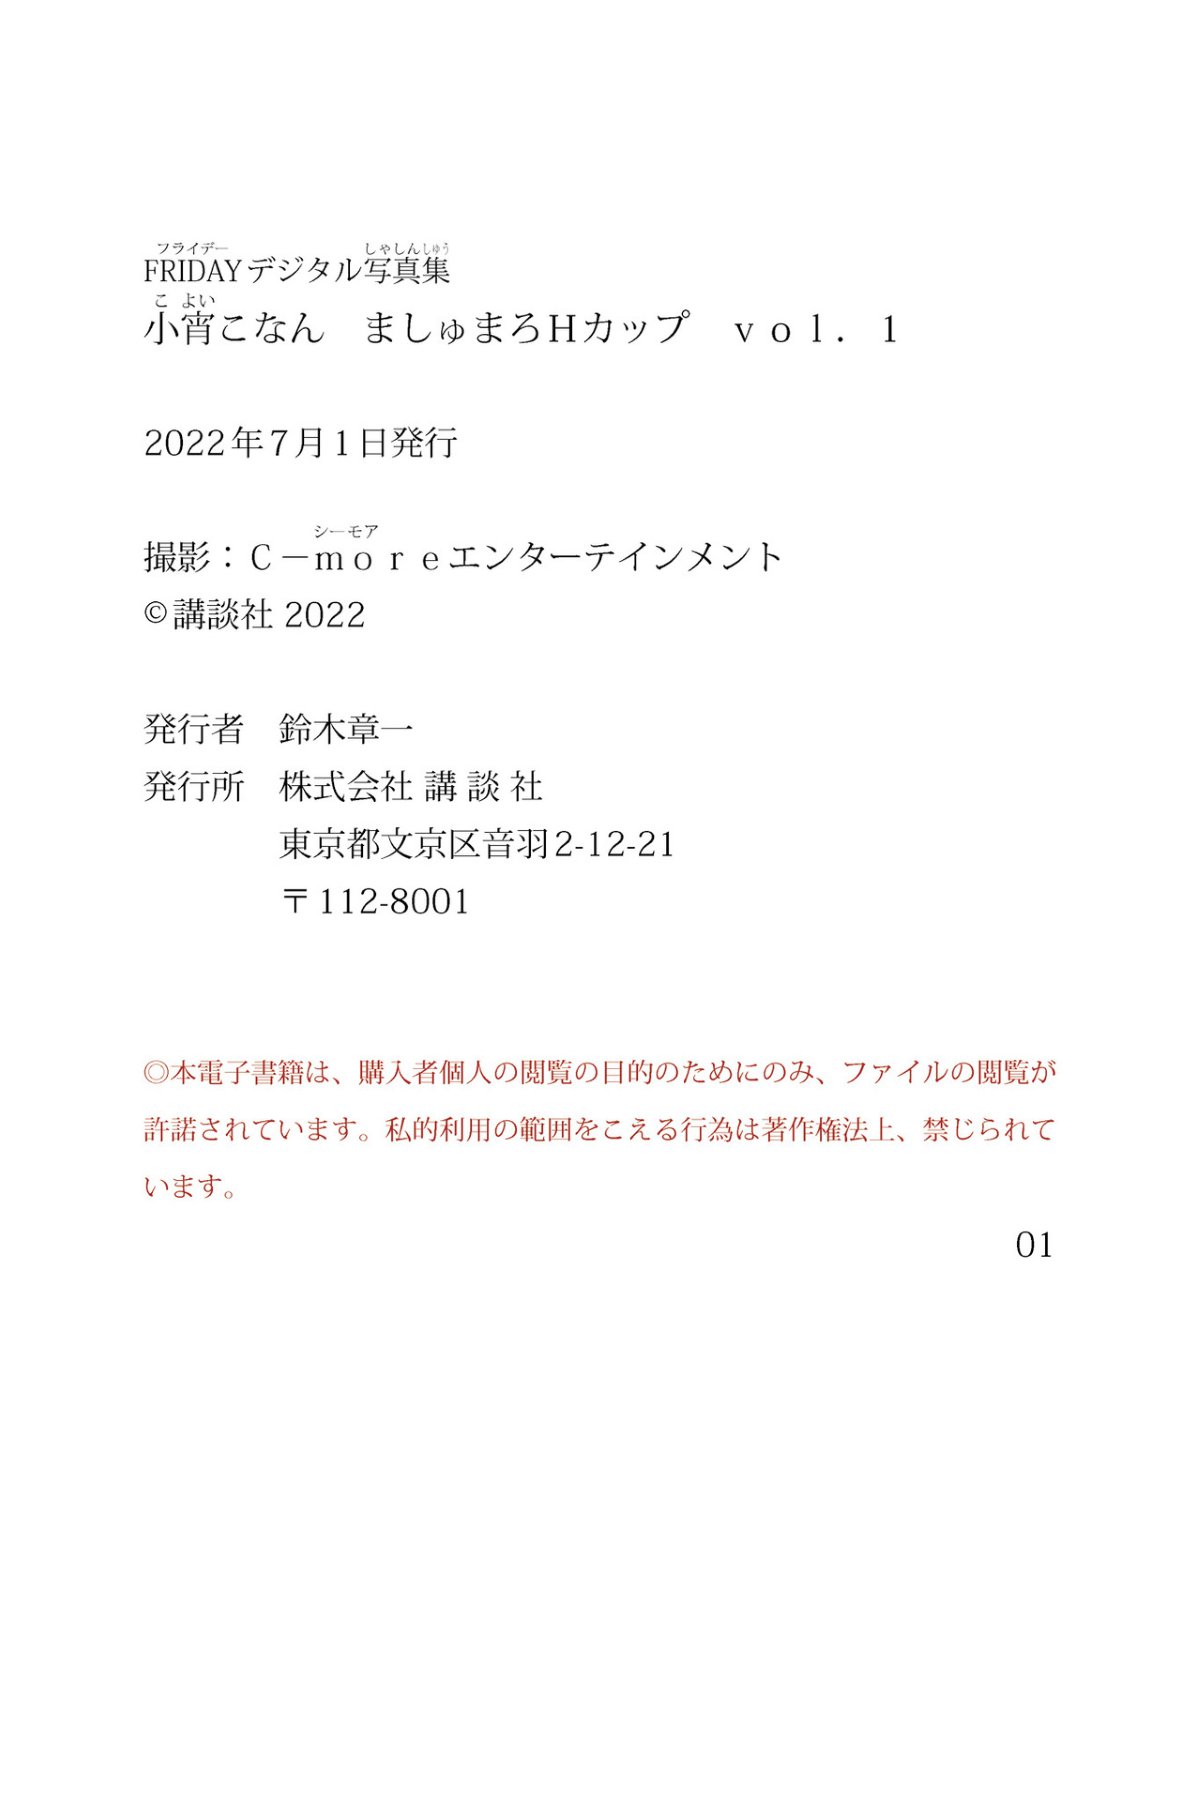 FRIDAY Digital Photobook Konan Koyoi 小宵こなん Marshmallow H Cup Vol 1 ましゅまろＨカップ Vol 1 2022 06 10 0050 2432315887.jpg